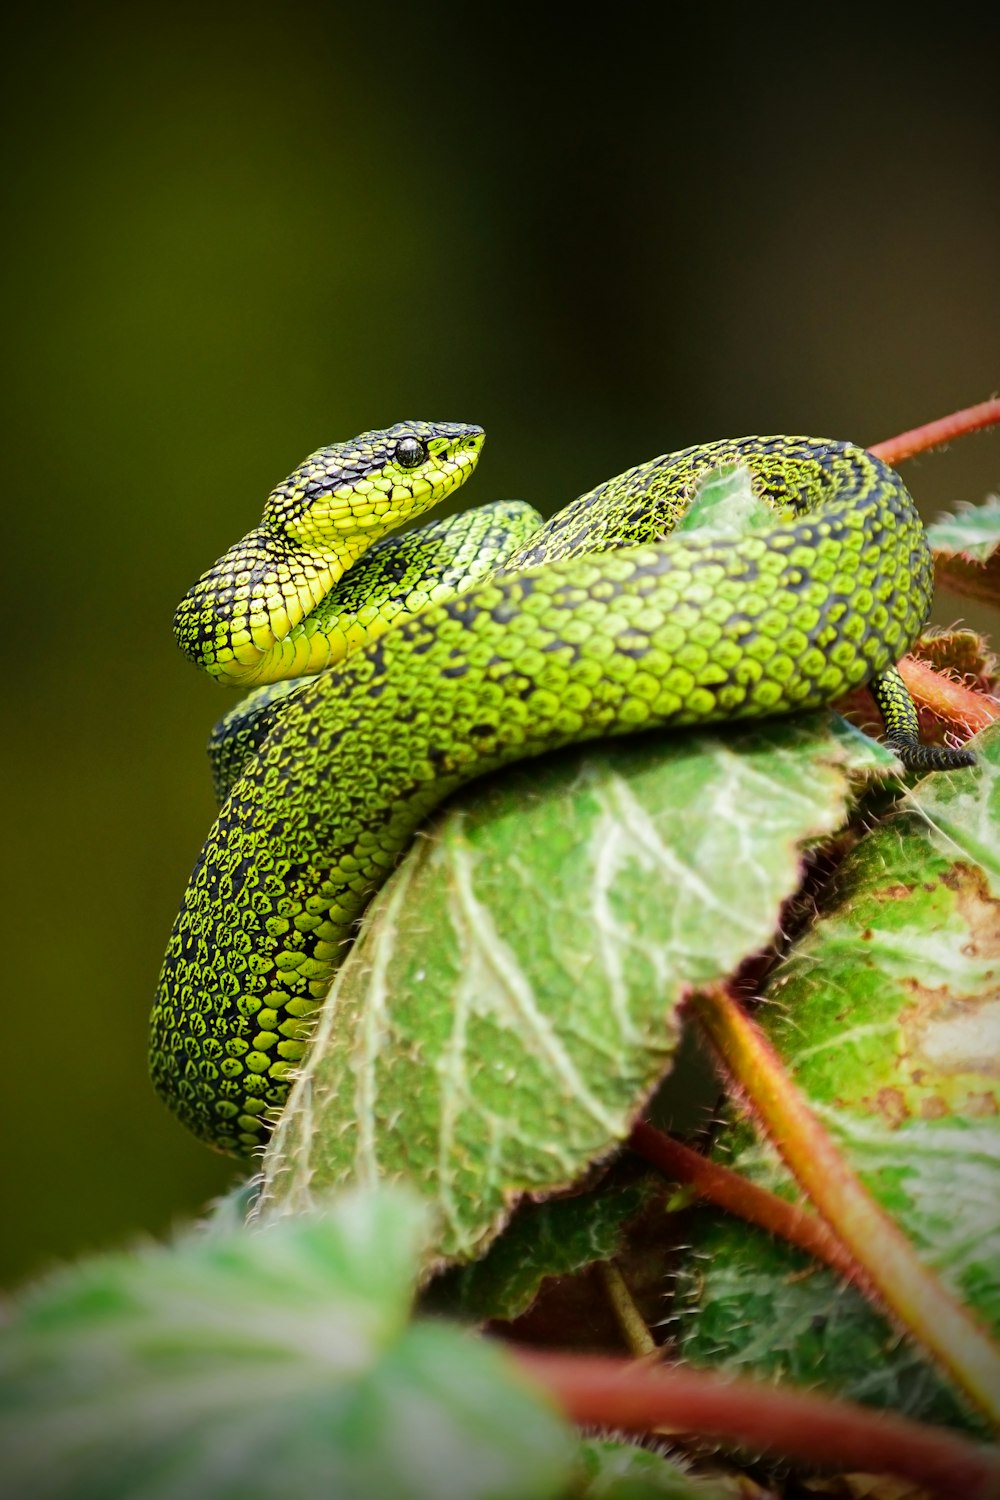 Fotos de serpientes | Descargar imágenes gratis en Unsplash